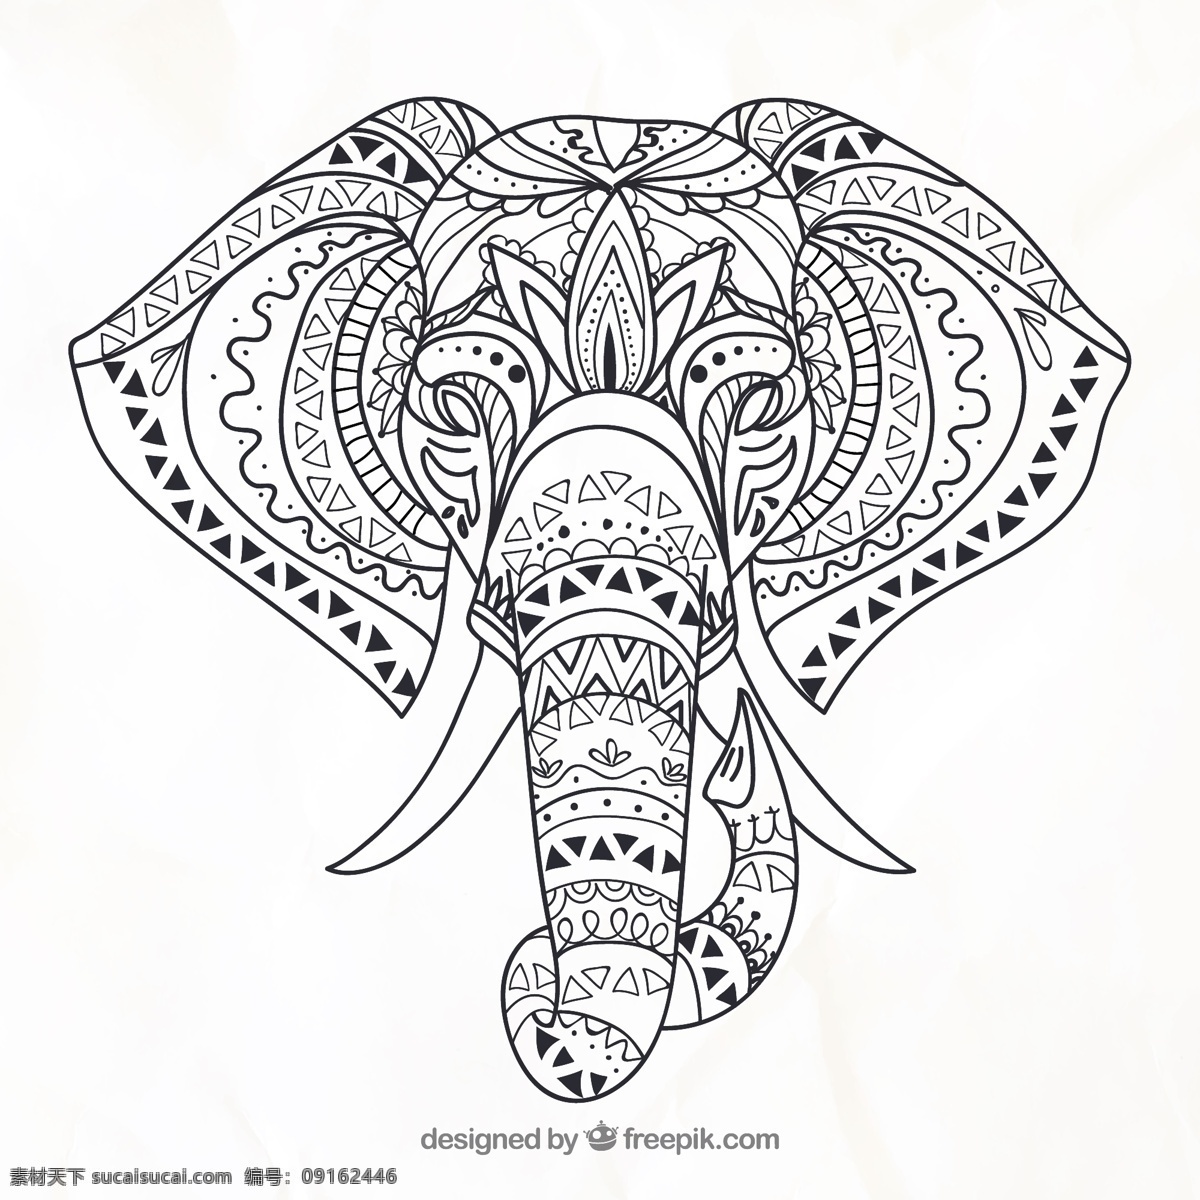 大象 头 黑白 线 稿 手绘 插画 大象头 线稿